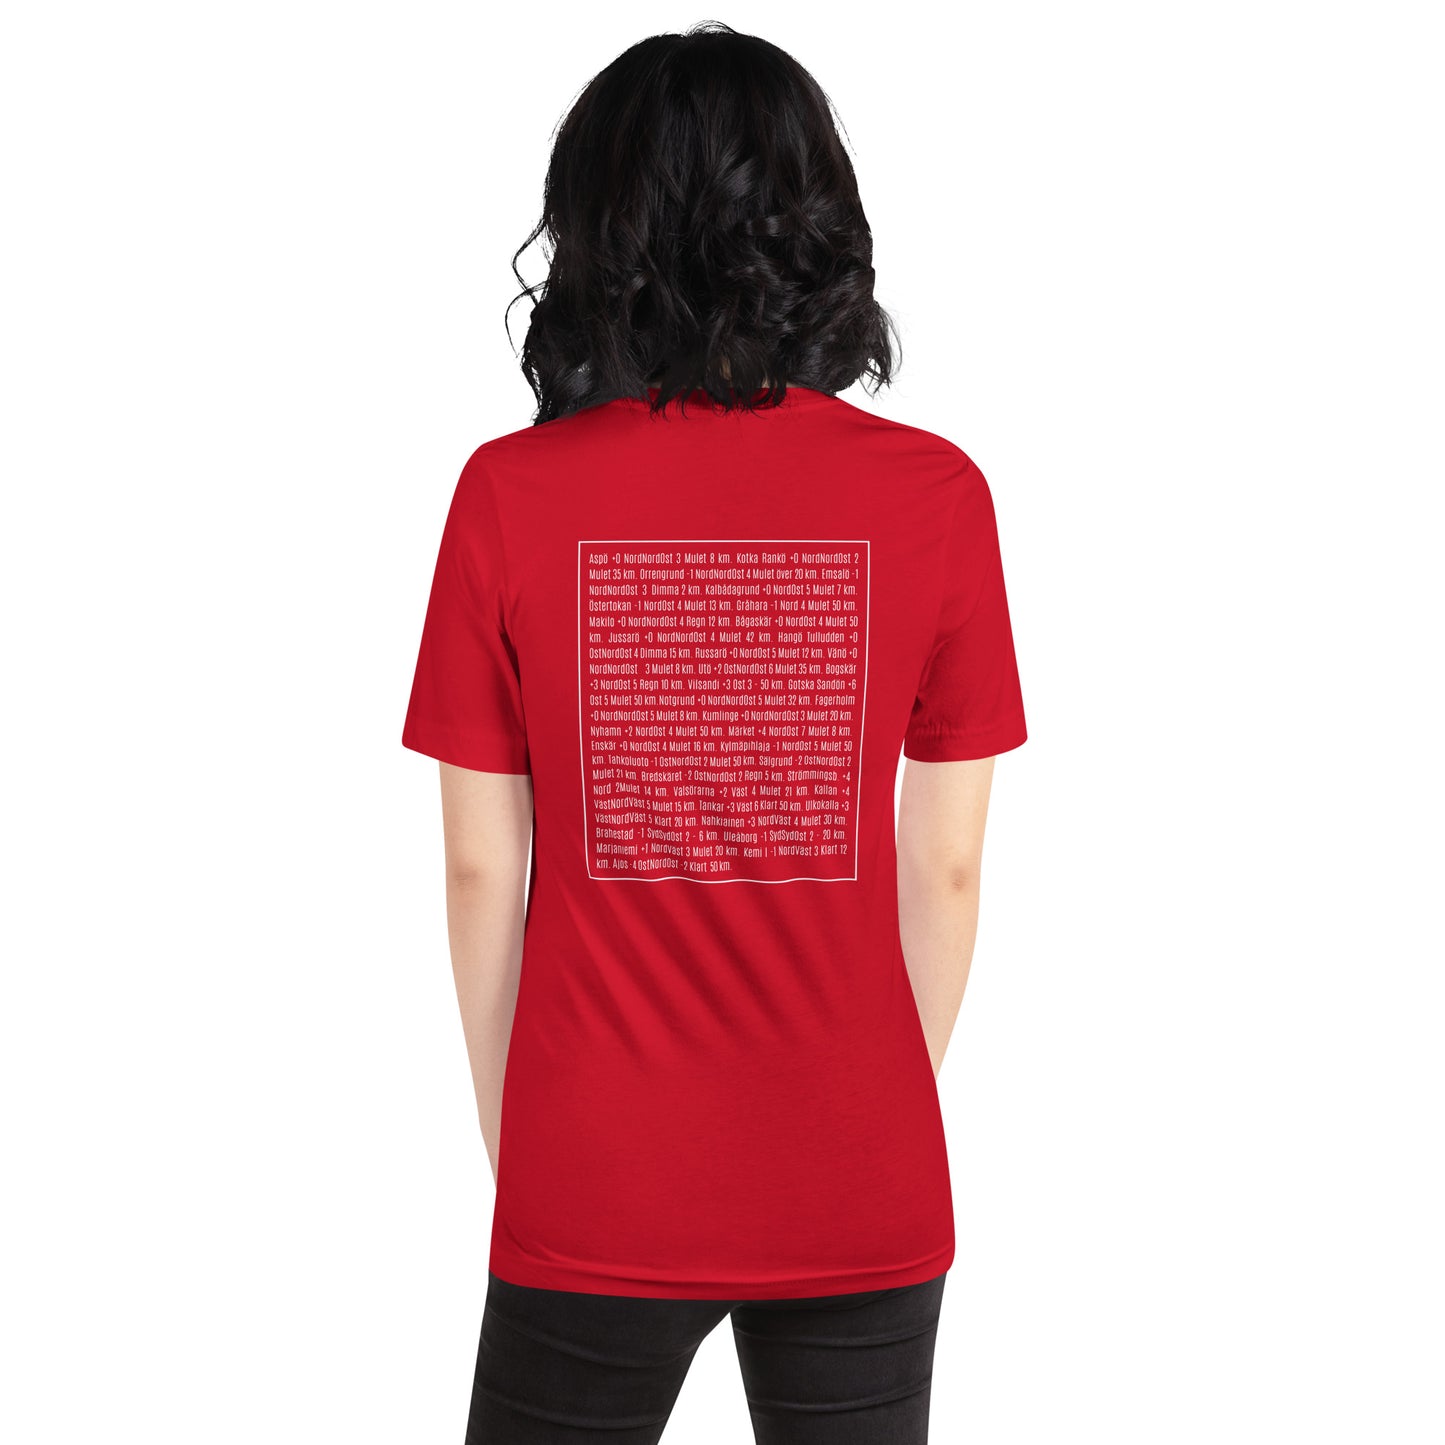 T-shirt Unisex - Långa sjörapporten - Vädret på Kuststationerna